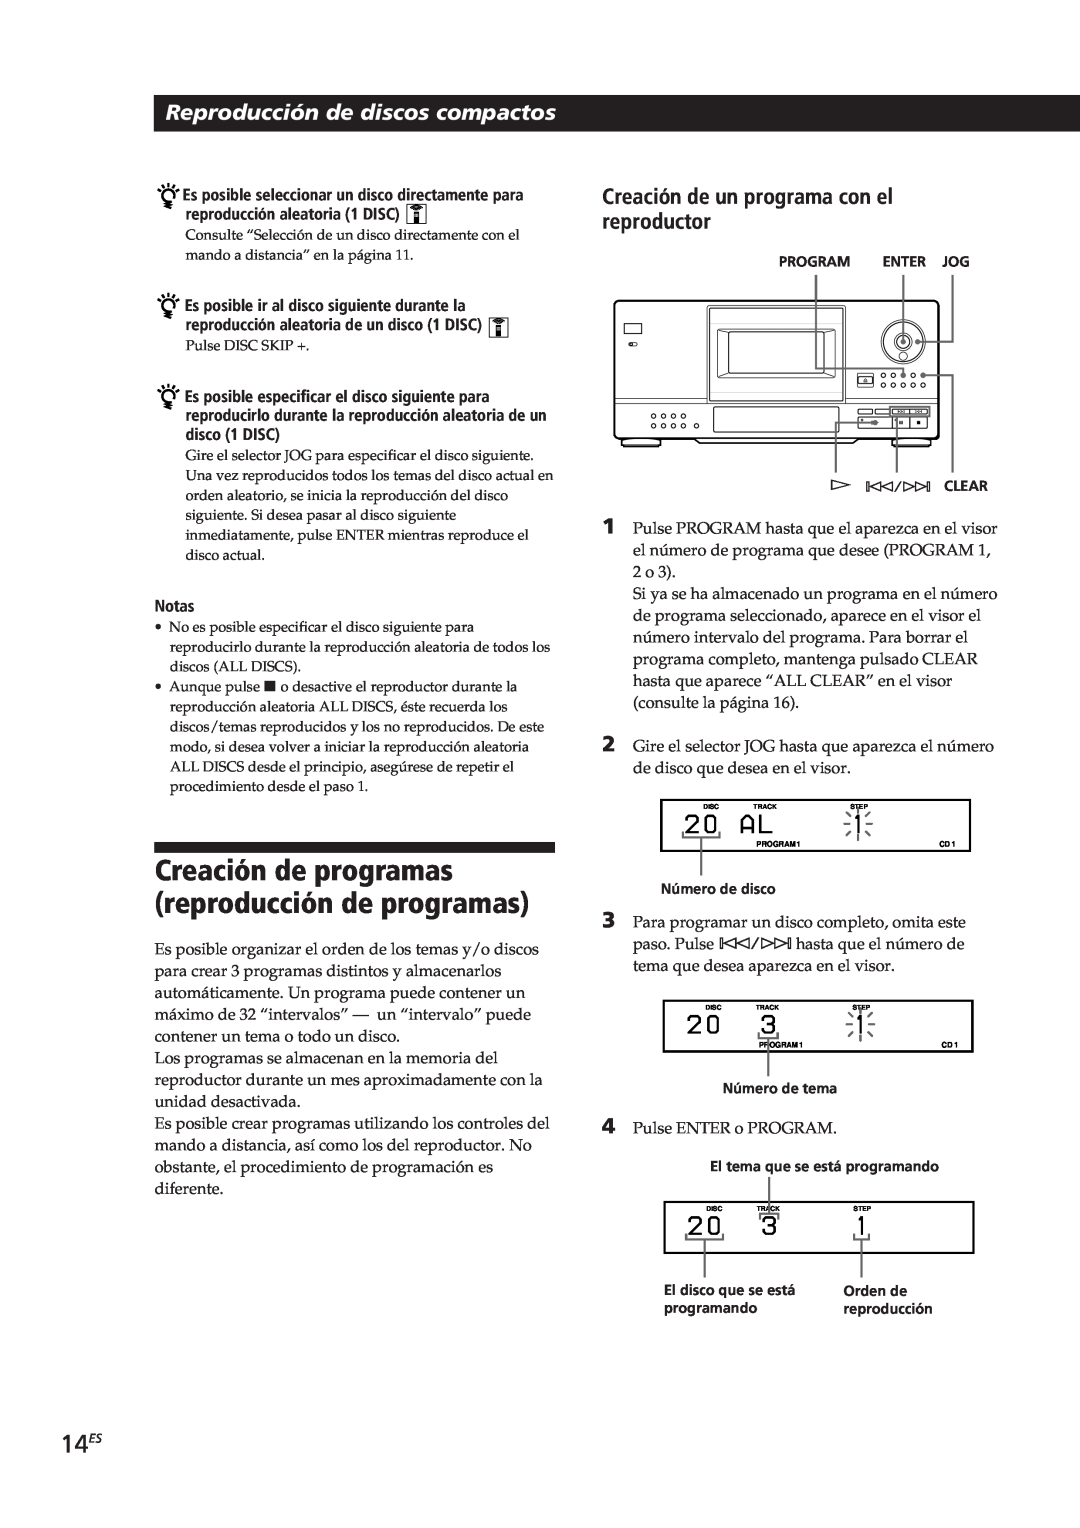 Sony CDP-CX153 manual 14ES, Reproducción de discos compactos, Creación de un programa con el reproductor, Notas 